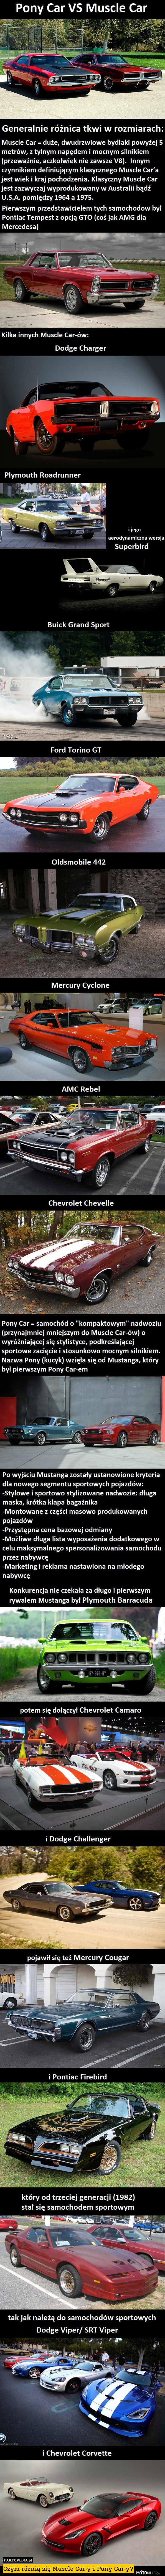 Czym różnią się Muscle Car-y i Pony Car-y? 